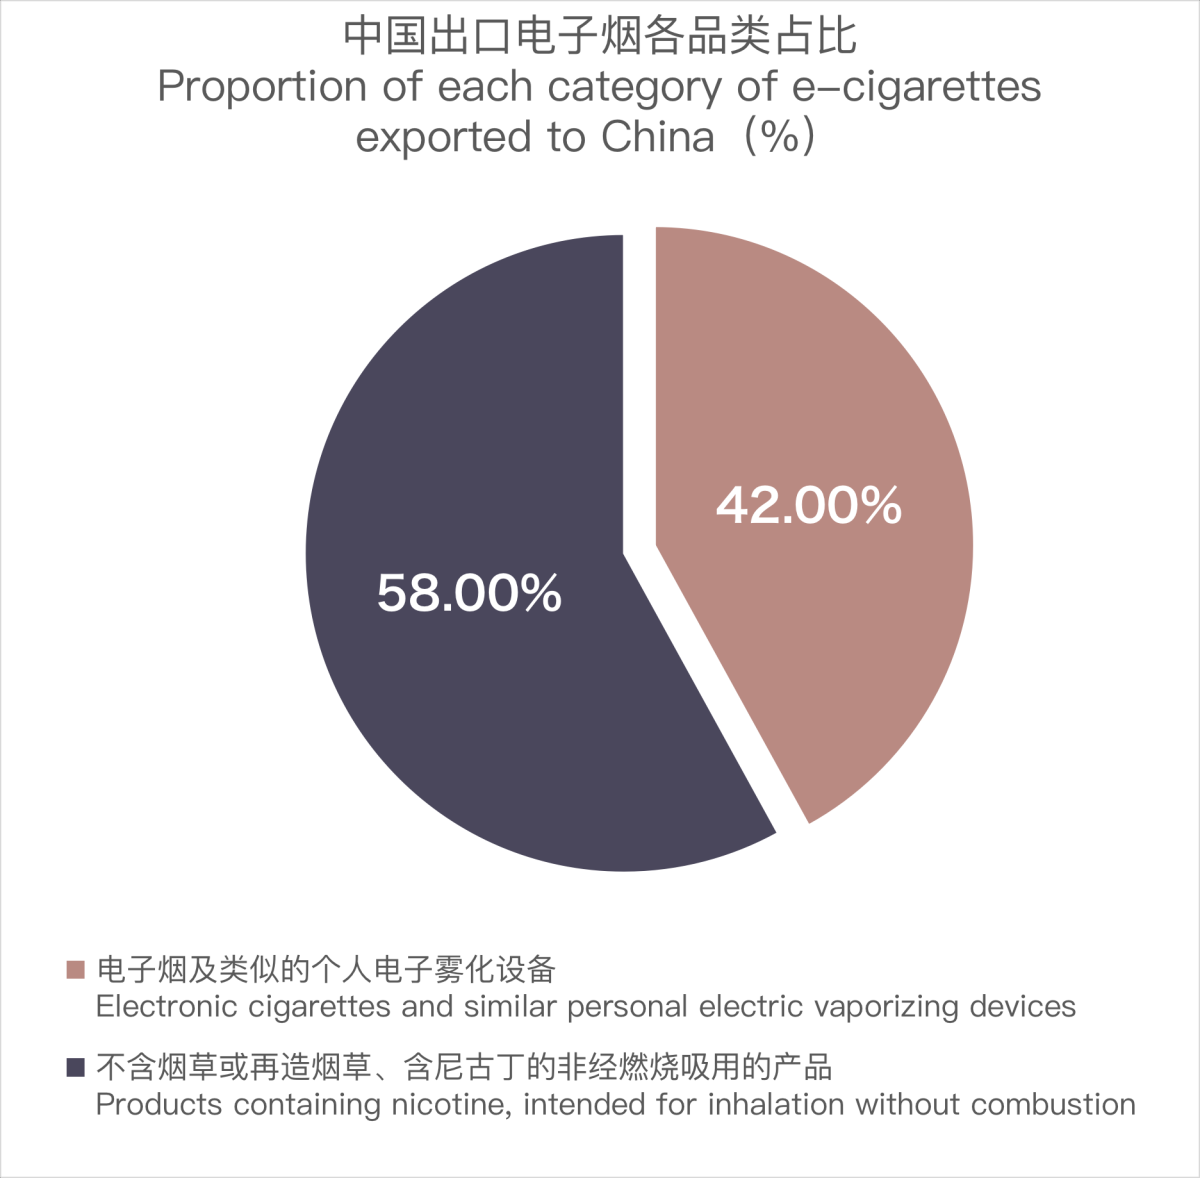 12月中国出口德国电子烟约5535万美元 环比上涨22.22%